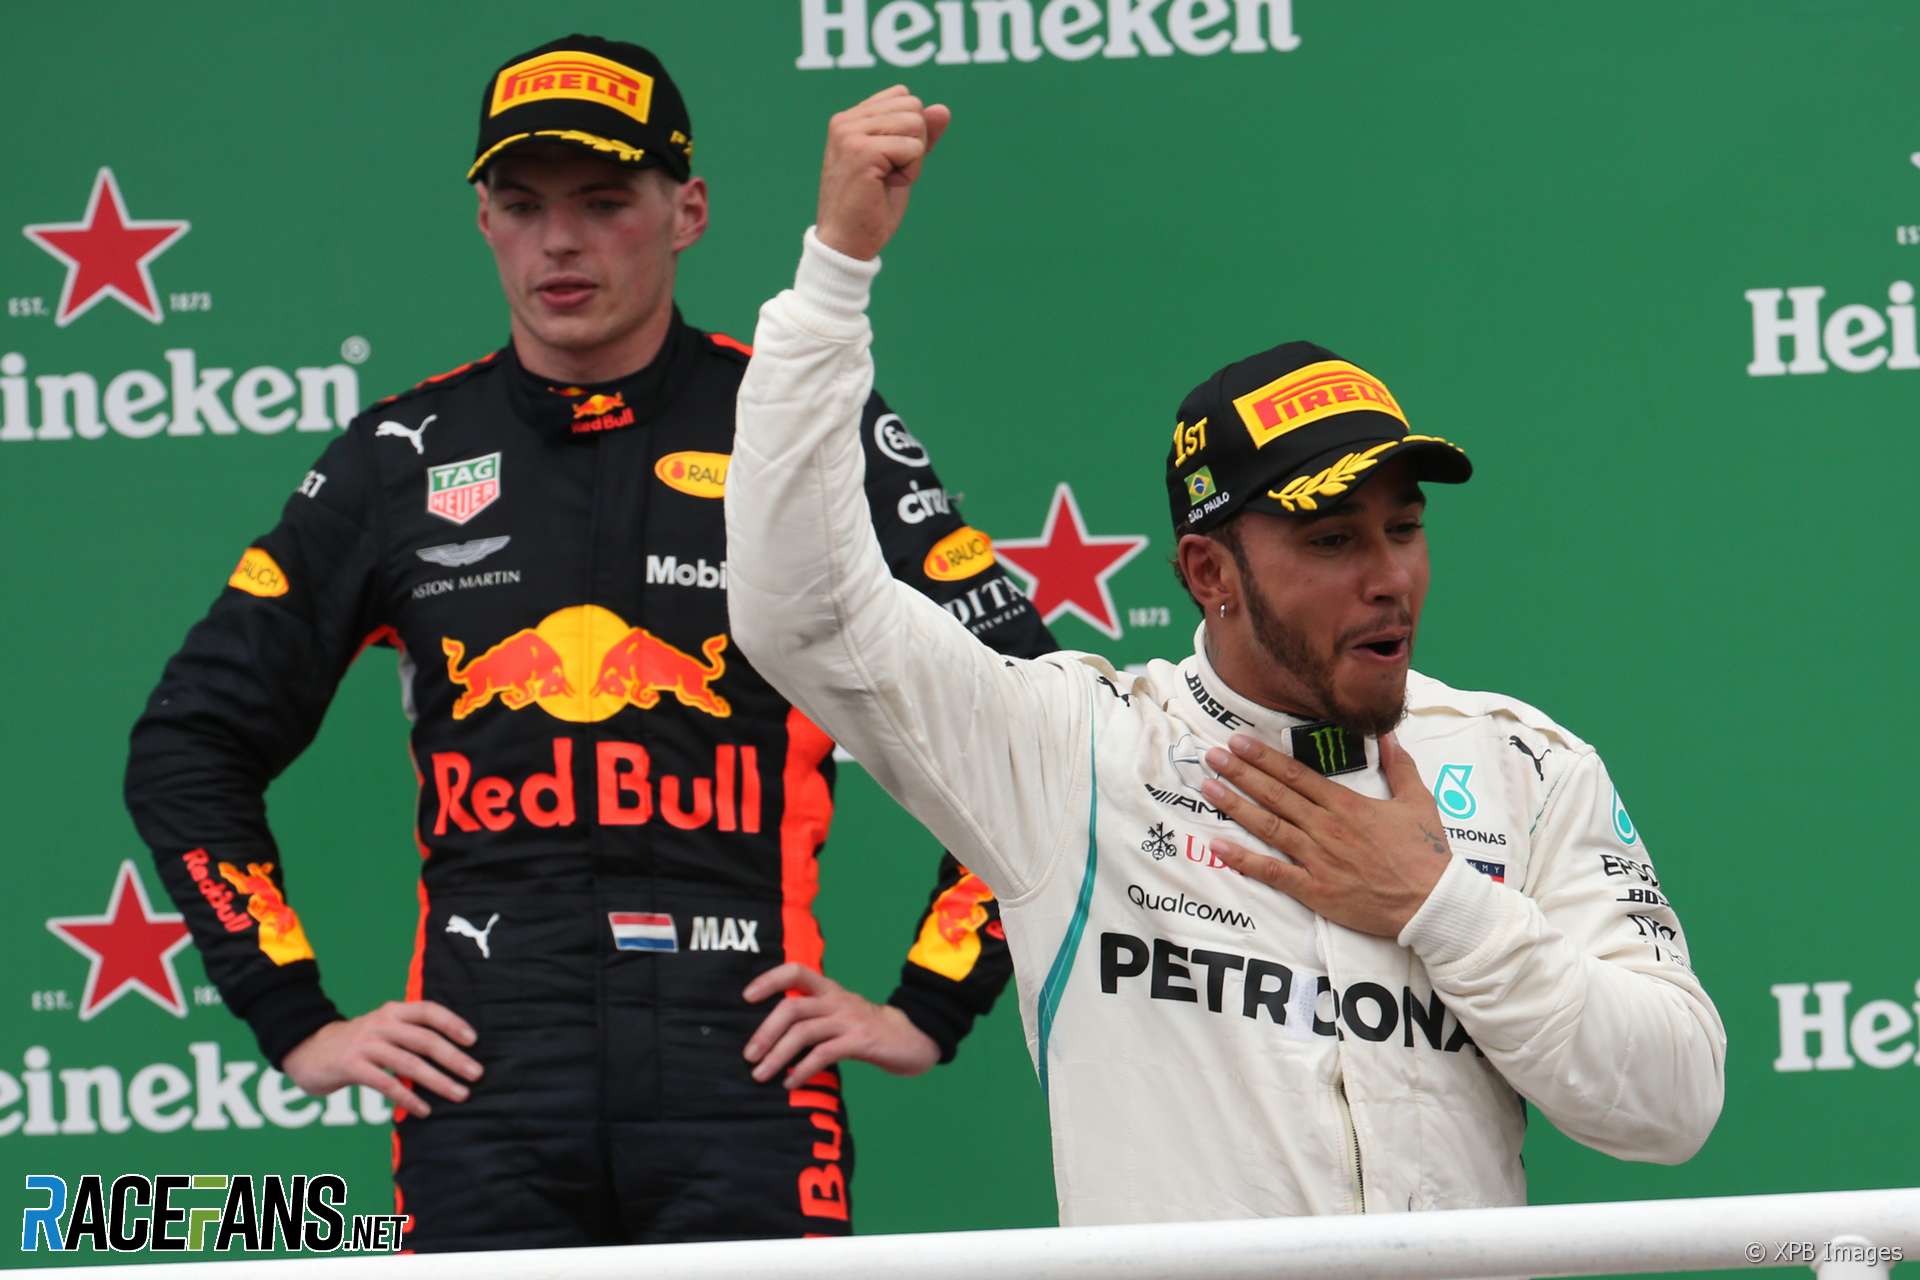 Max Verstappen, Lewis Hamilton, Interlagos, 2018